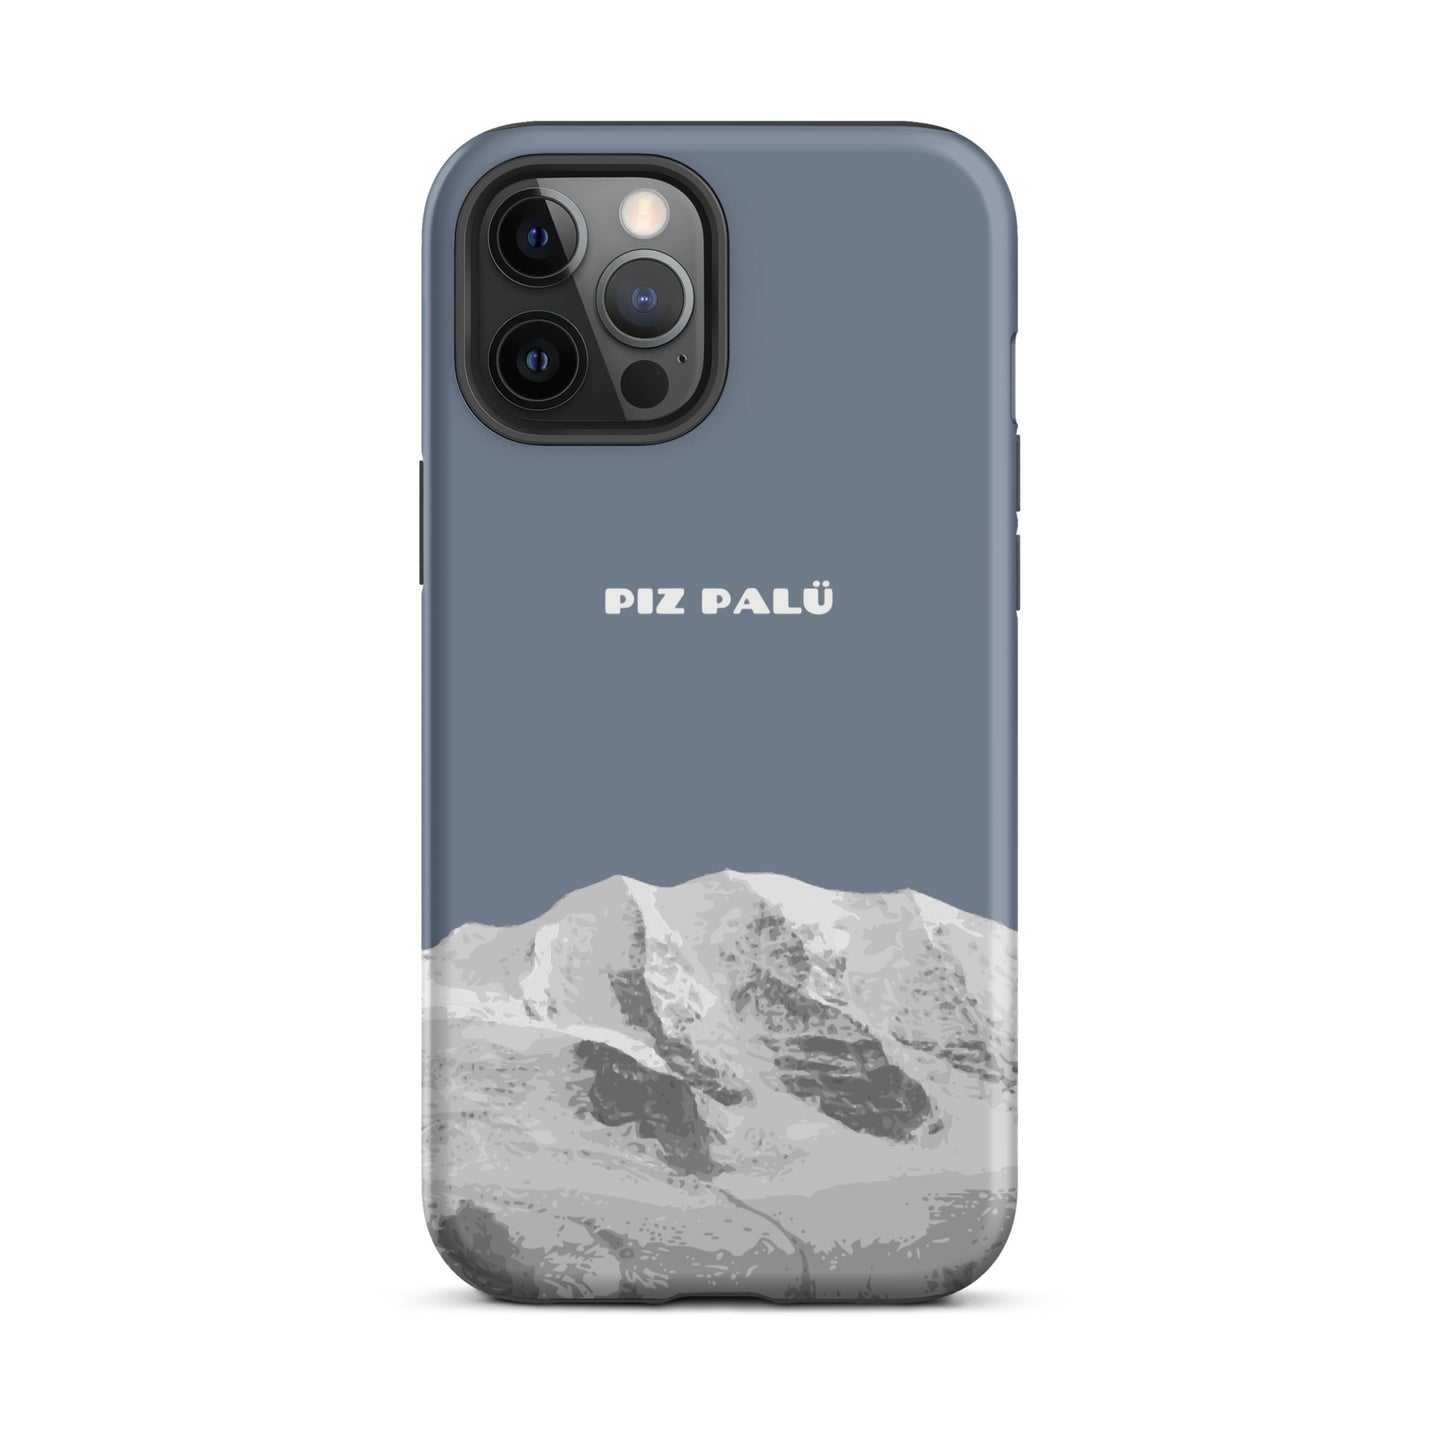 Hülle für das iPhone 12 Pro Max von Apple in der Farbe Schiefergrau, dass den Piz Palü in Graubünden zeigt.